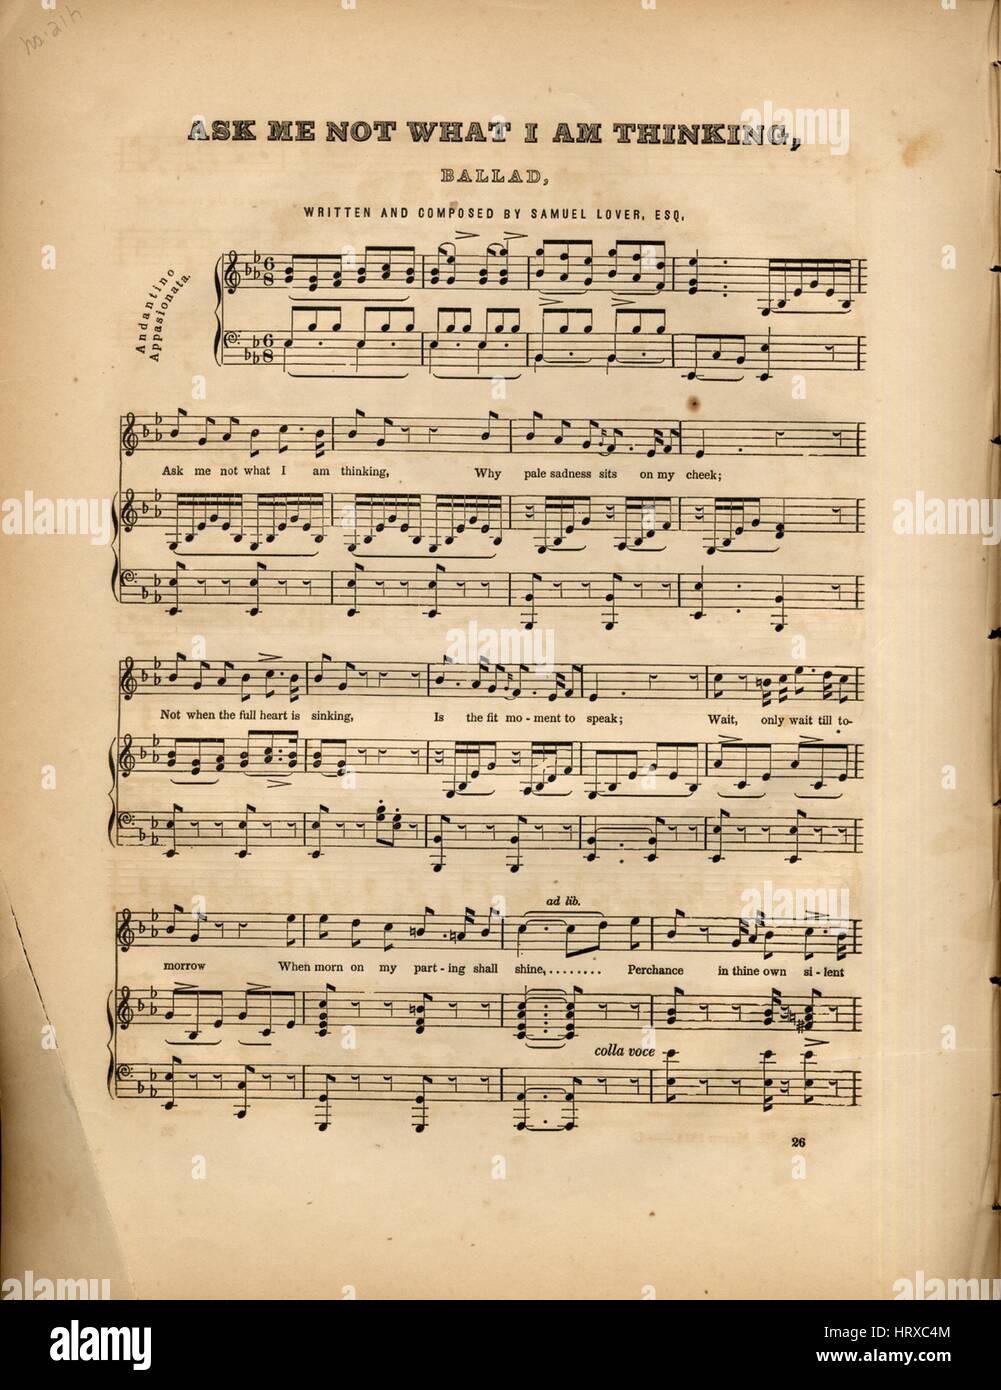 Imagen de cubierta de partituras de la canción "No preguntarme qué pienso  Ballad", con notas de autoría original leyendo 'Escrito y compuesto por  Samuel amante, Esq', de 1900. El editor aparece como '',